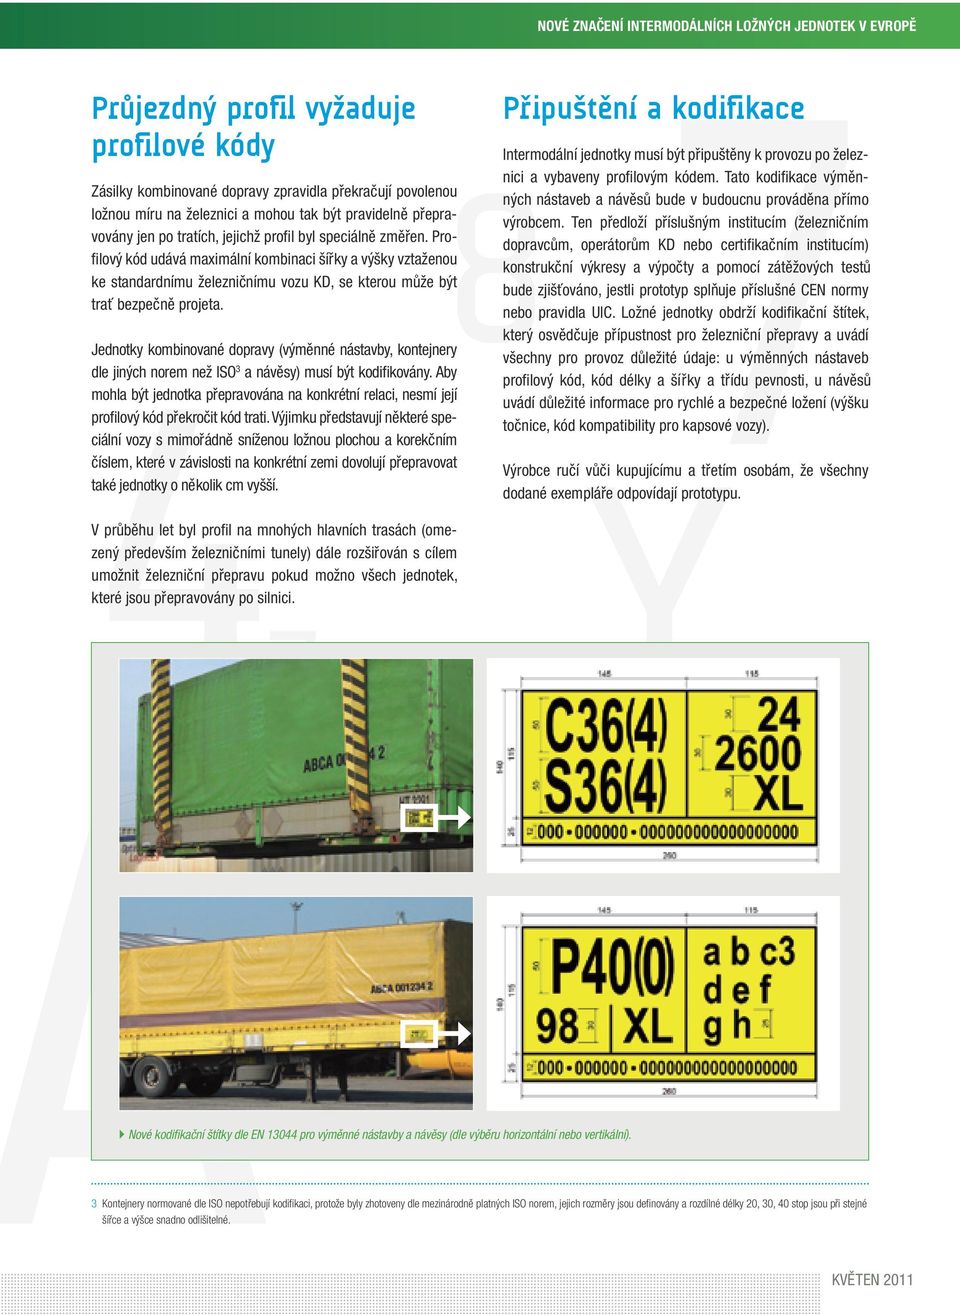 4 Z Jednotky kombinované dopravy (výměnné nástavby, kontejnery dle jiných norem než ISO 3 a návěsy) musí být kodifikovány.